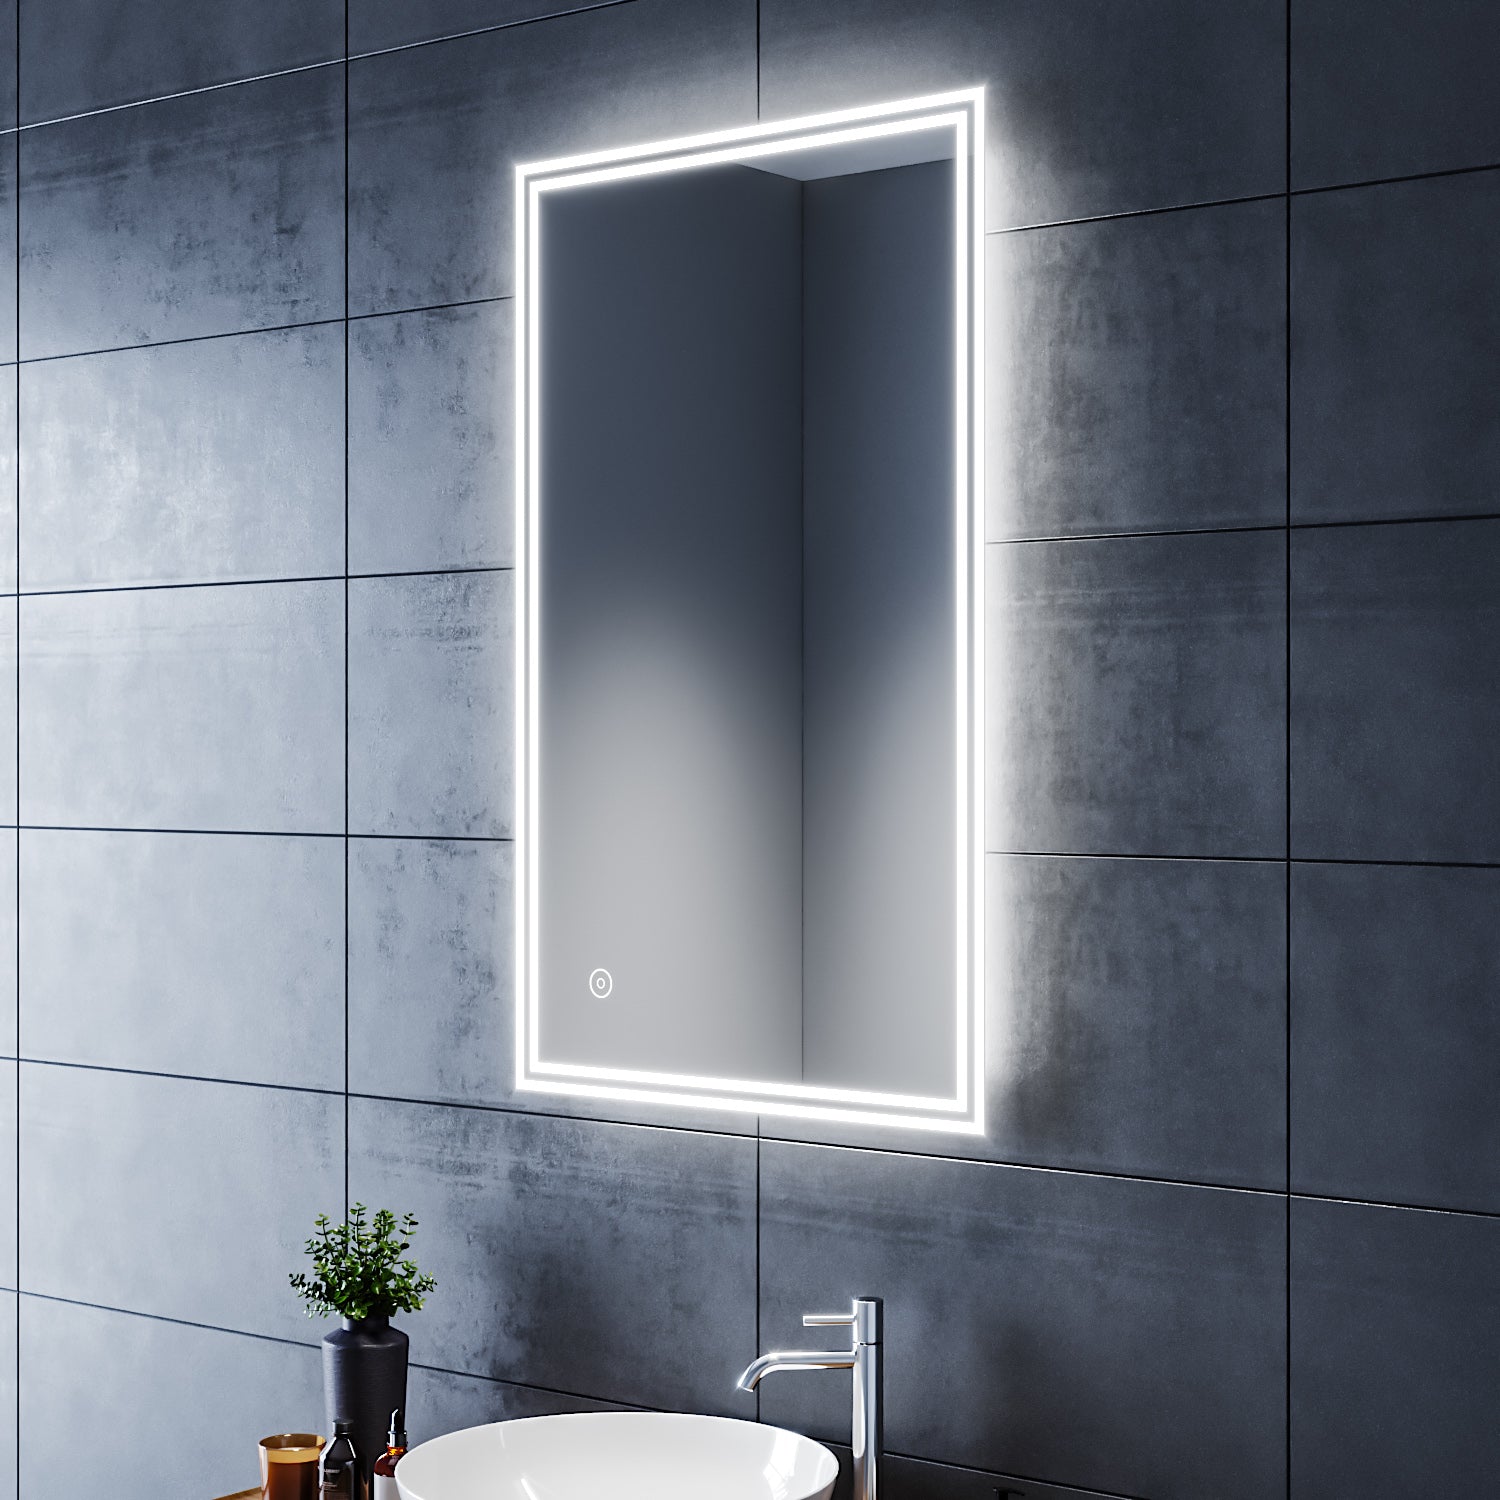 SIRHONA Miroir led Miroir de salle de bains avec éclairage LED Miroir Cosmétiques Mural Lumière Illumination avec Commande par Effleurement 100x60 CM - SIRHONA